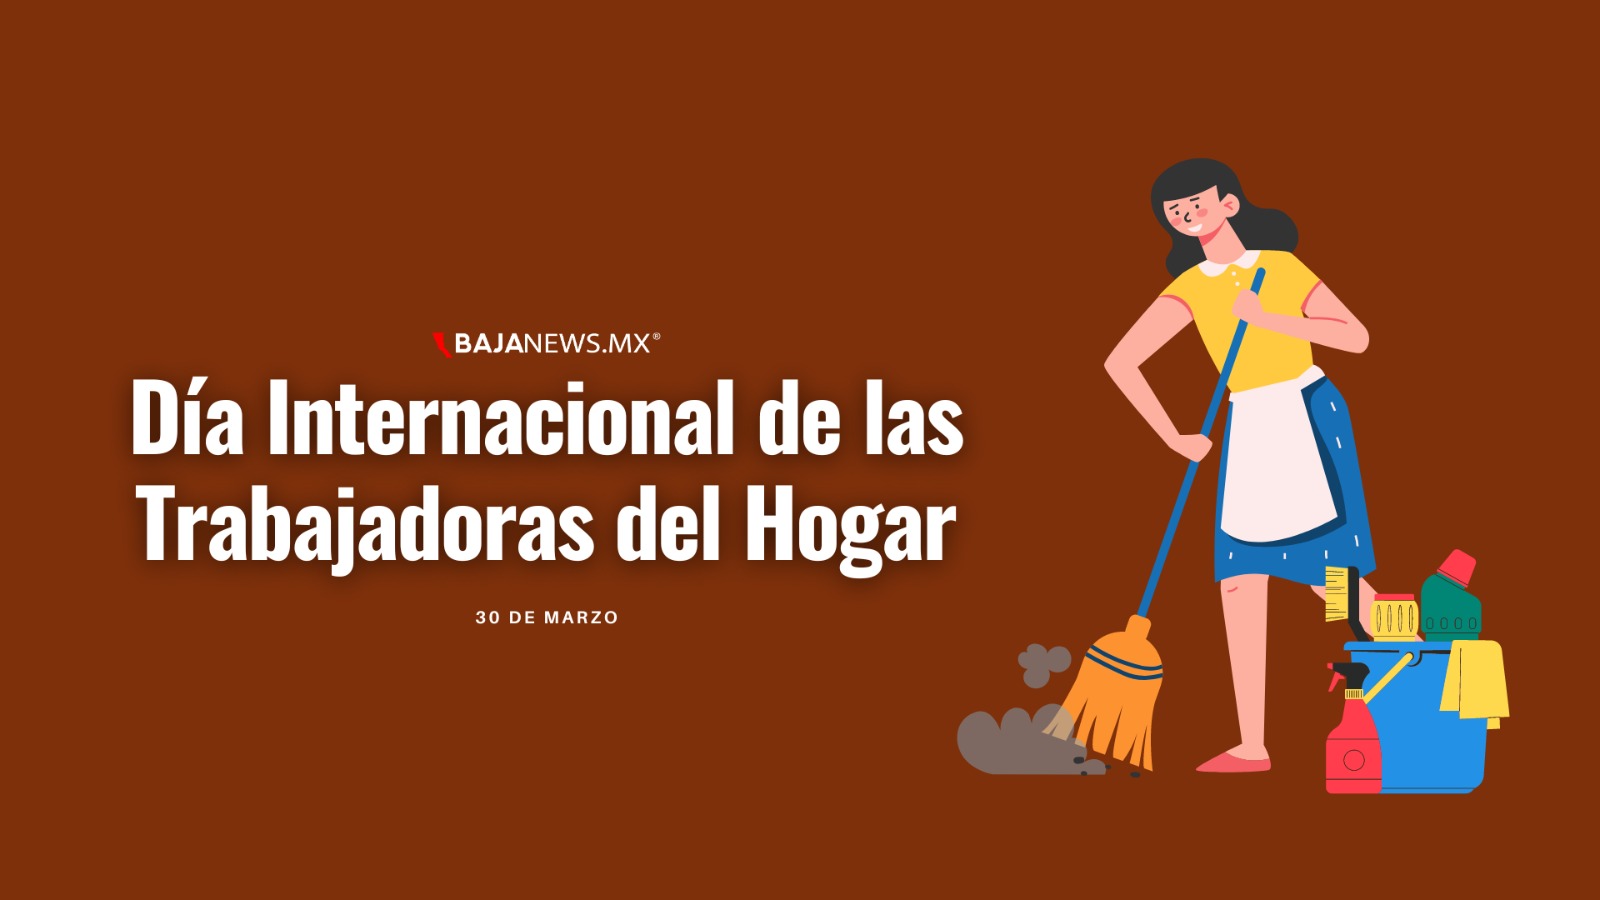 Día internacional de las trabajadoras domésticas